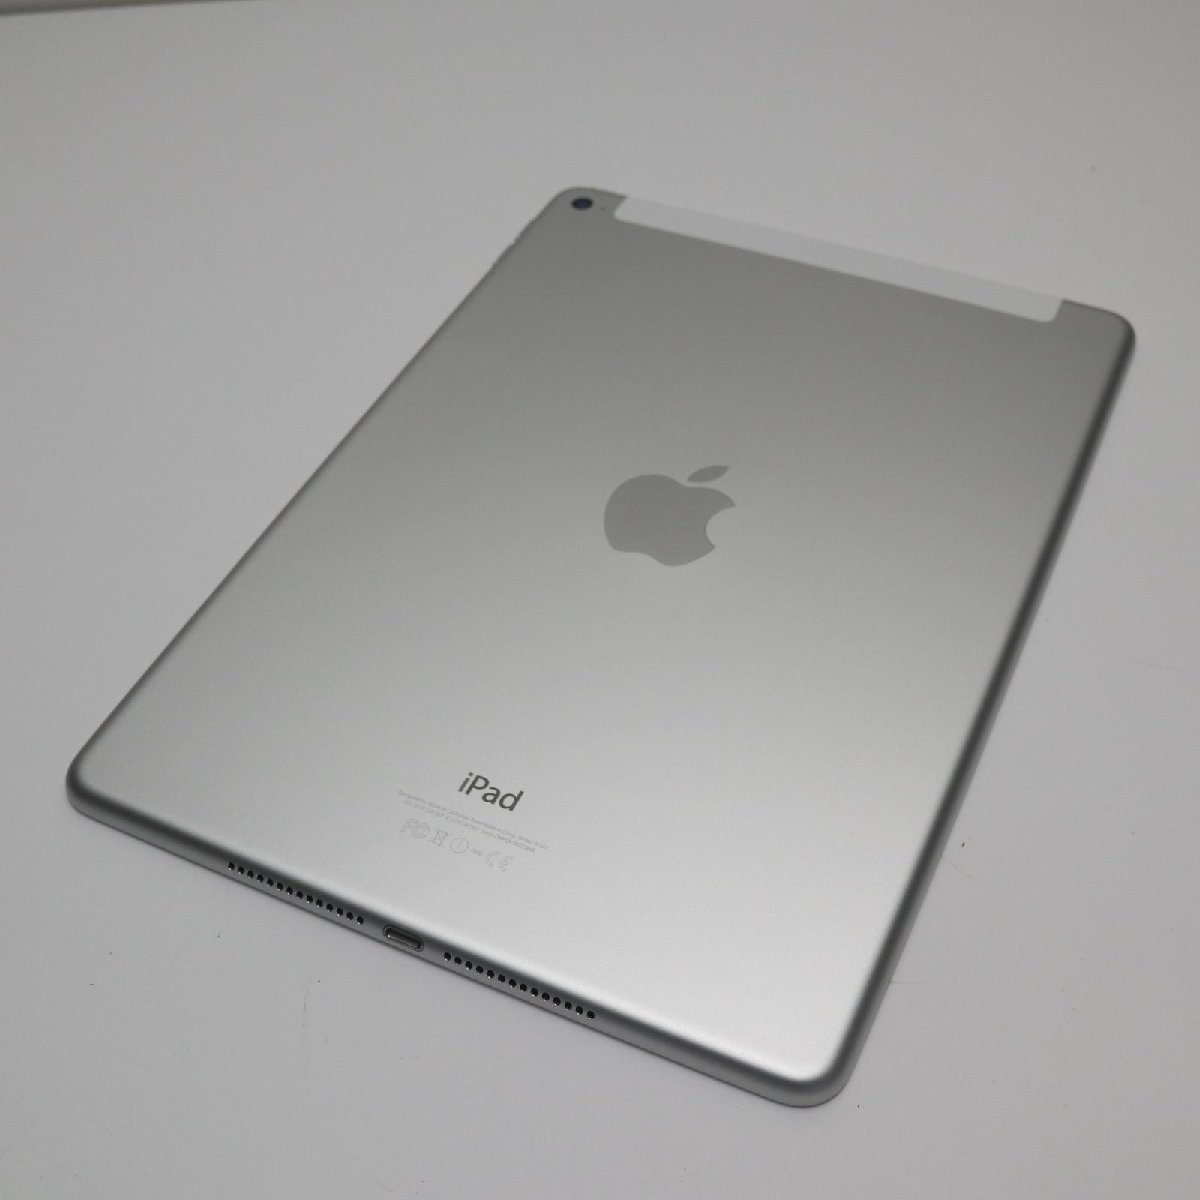 新品同様 docomo iPad Air 2 Cellular 16GB シルバー 即日発送 タブレットApple 本体 あすつく 土日祝発送OK_画像2